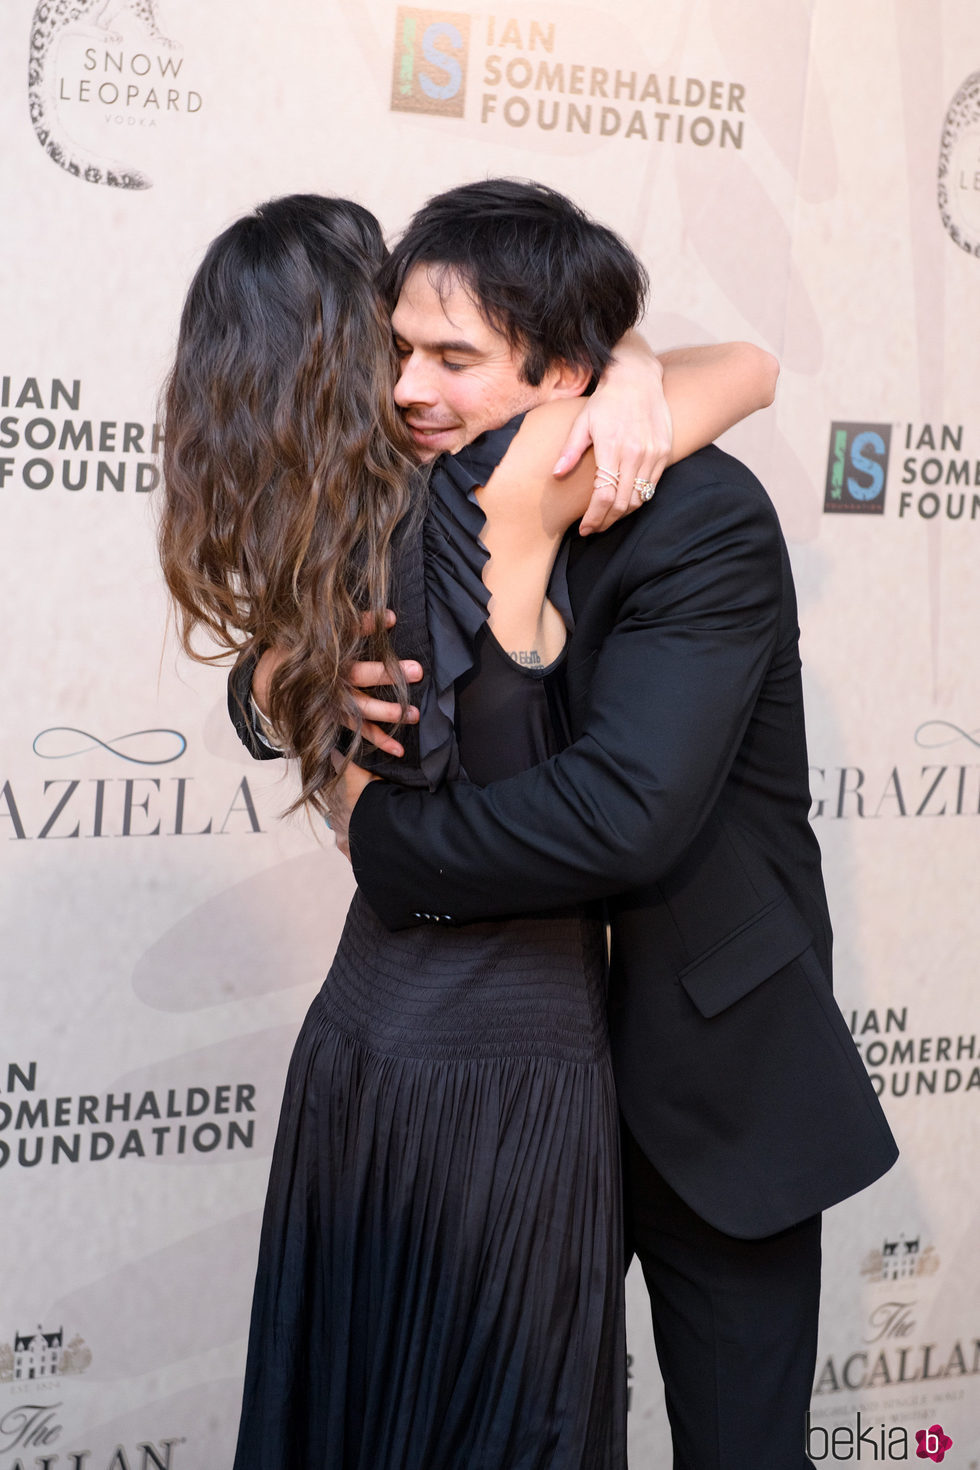 Ian Somerhalder abraza a Nikki Reed en la gala de la fundación del actor